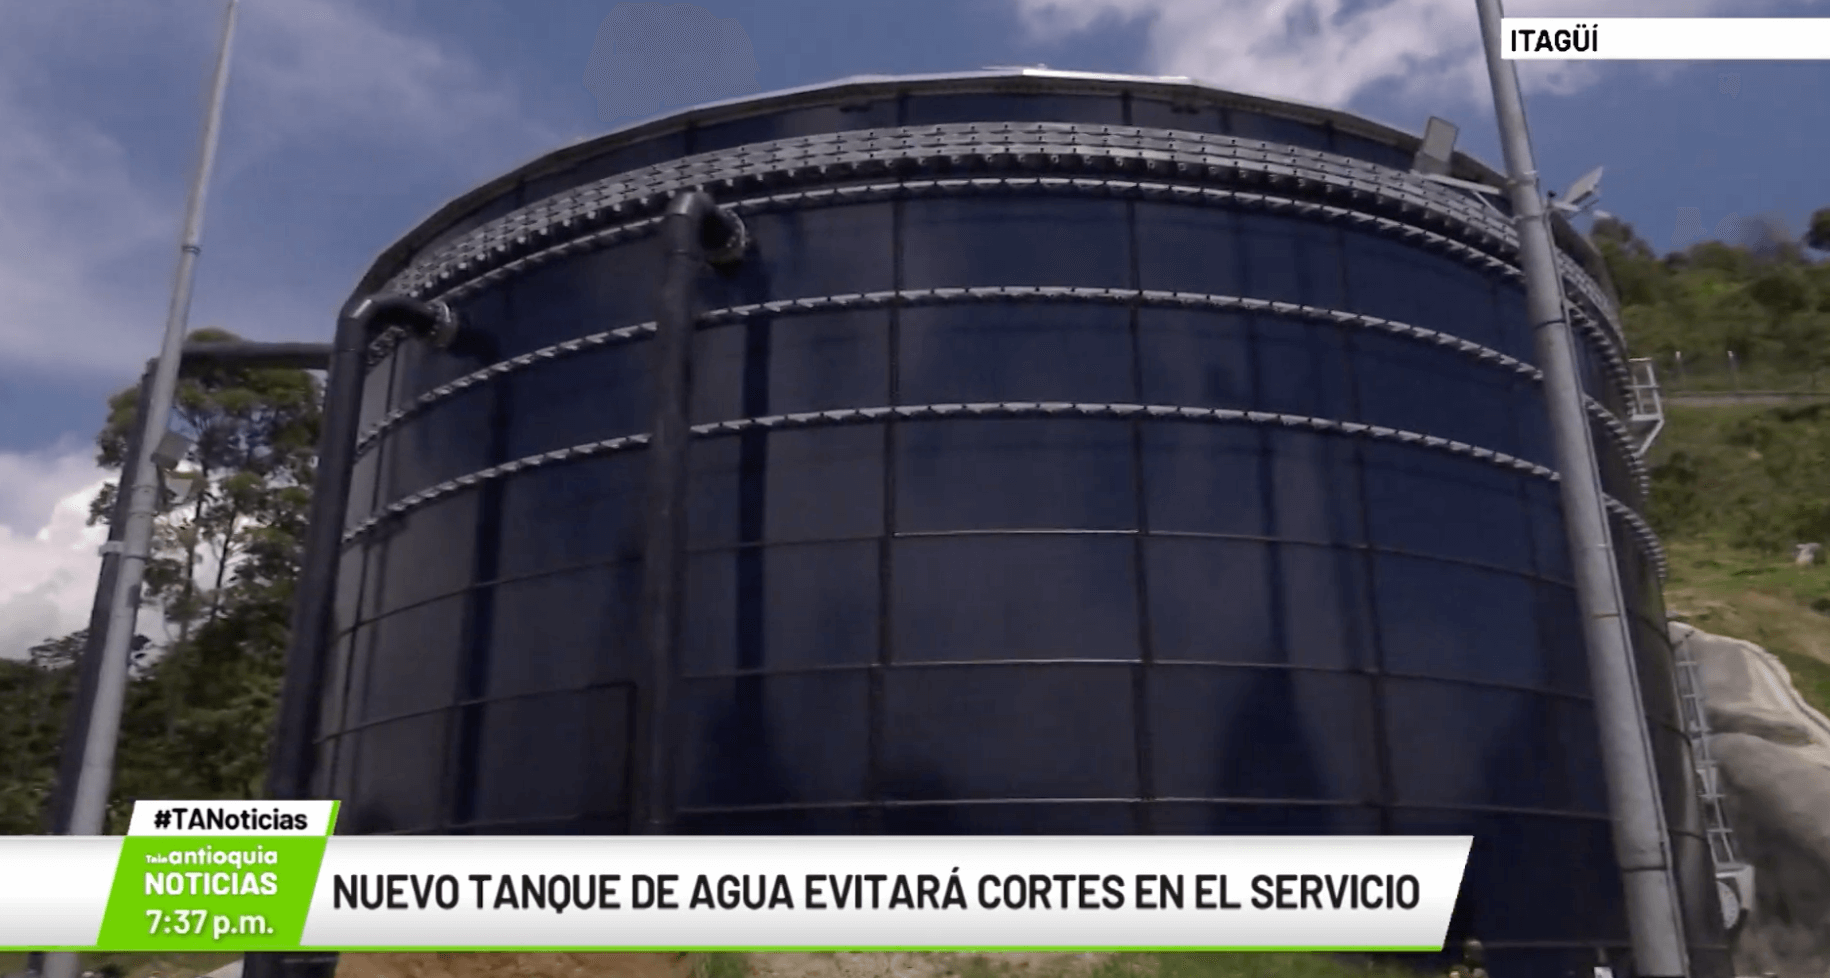 Nuevo tanque de agua evitará cortes en el servicio